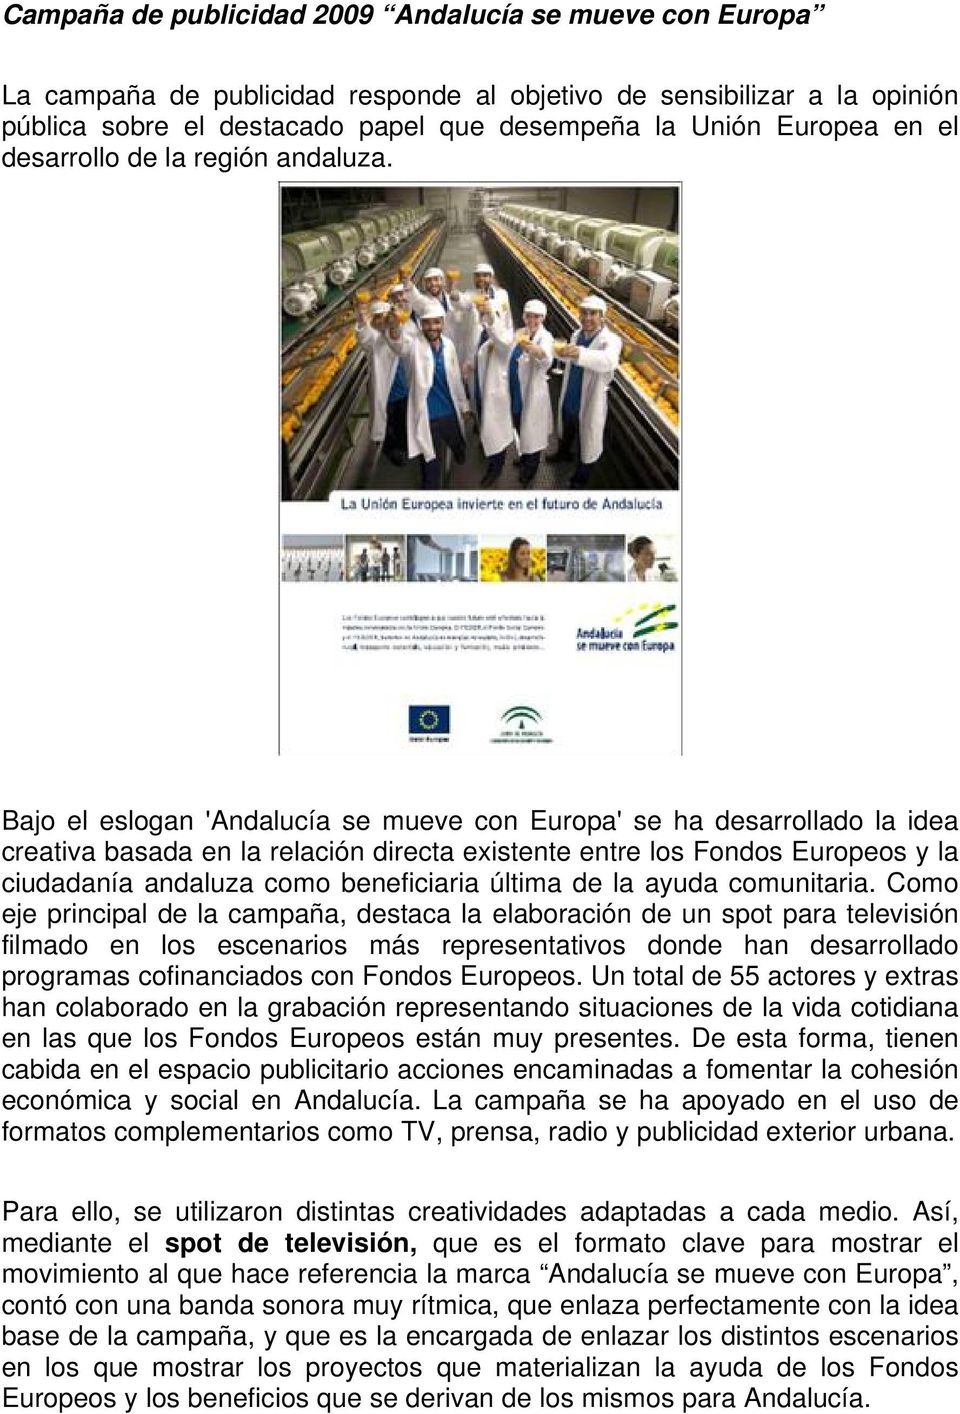 Bajo el eslogan 'Andalucía se mueve con Europa' se ha desarrollado la idea creativa basada en la relación directa existente entre los Fondos Europeos y la ciudadanía andaluza como beneficiaria última